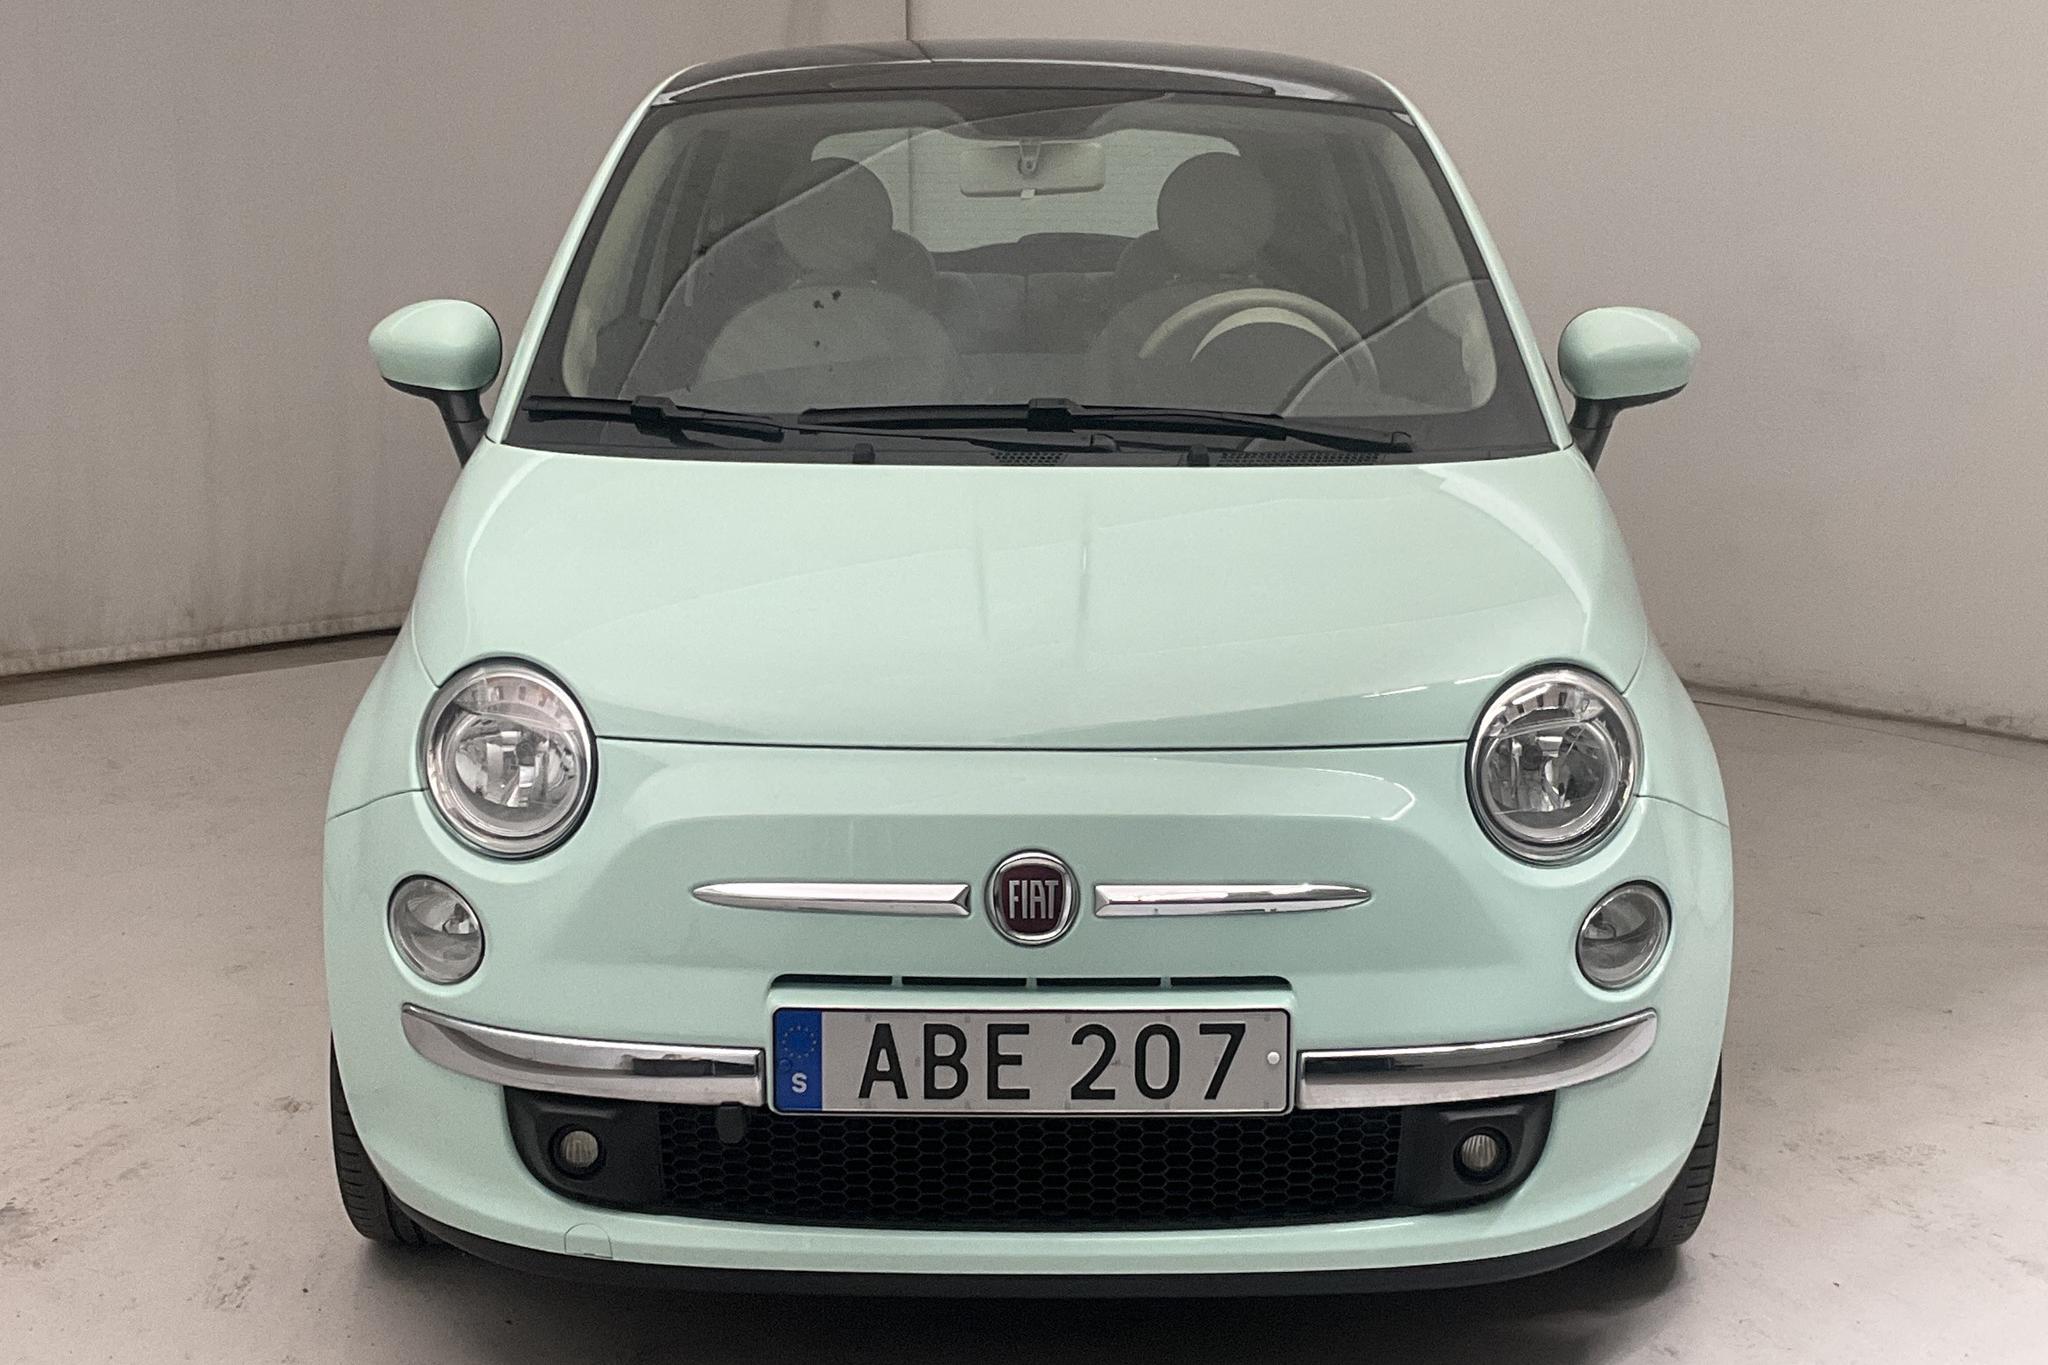 Fiat 500 1.2 (69hk) - 57 790 km - Manual - green - 2014